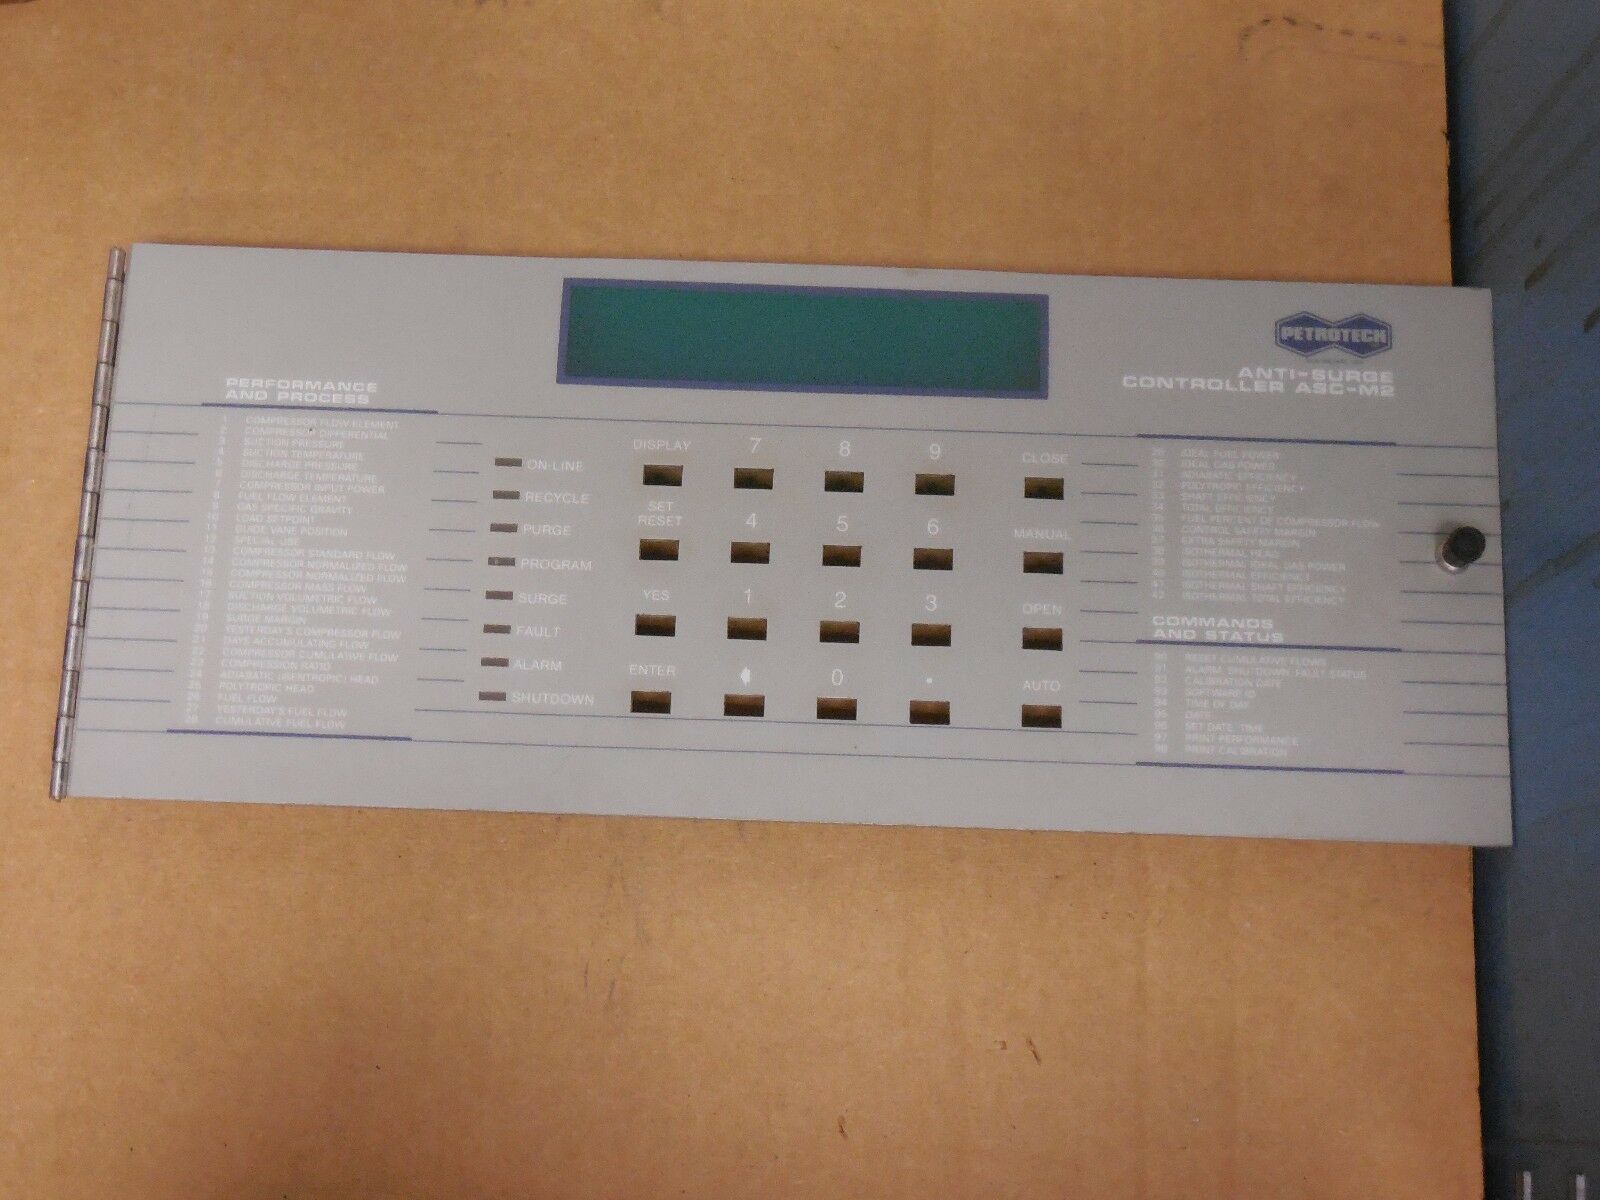 Petrotech Anti-surge Controller Display Panel Interface Asc-m2 Ascm2